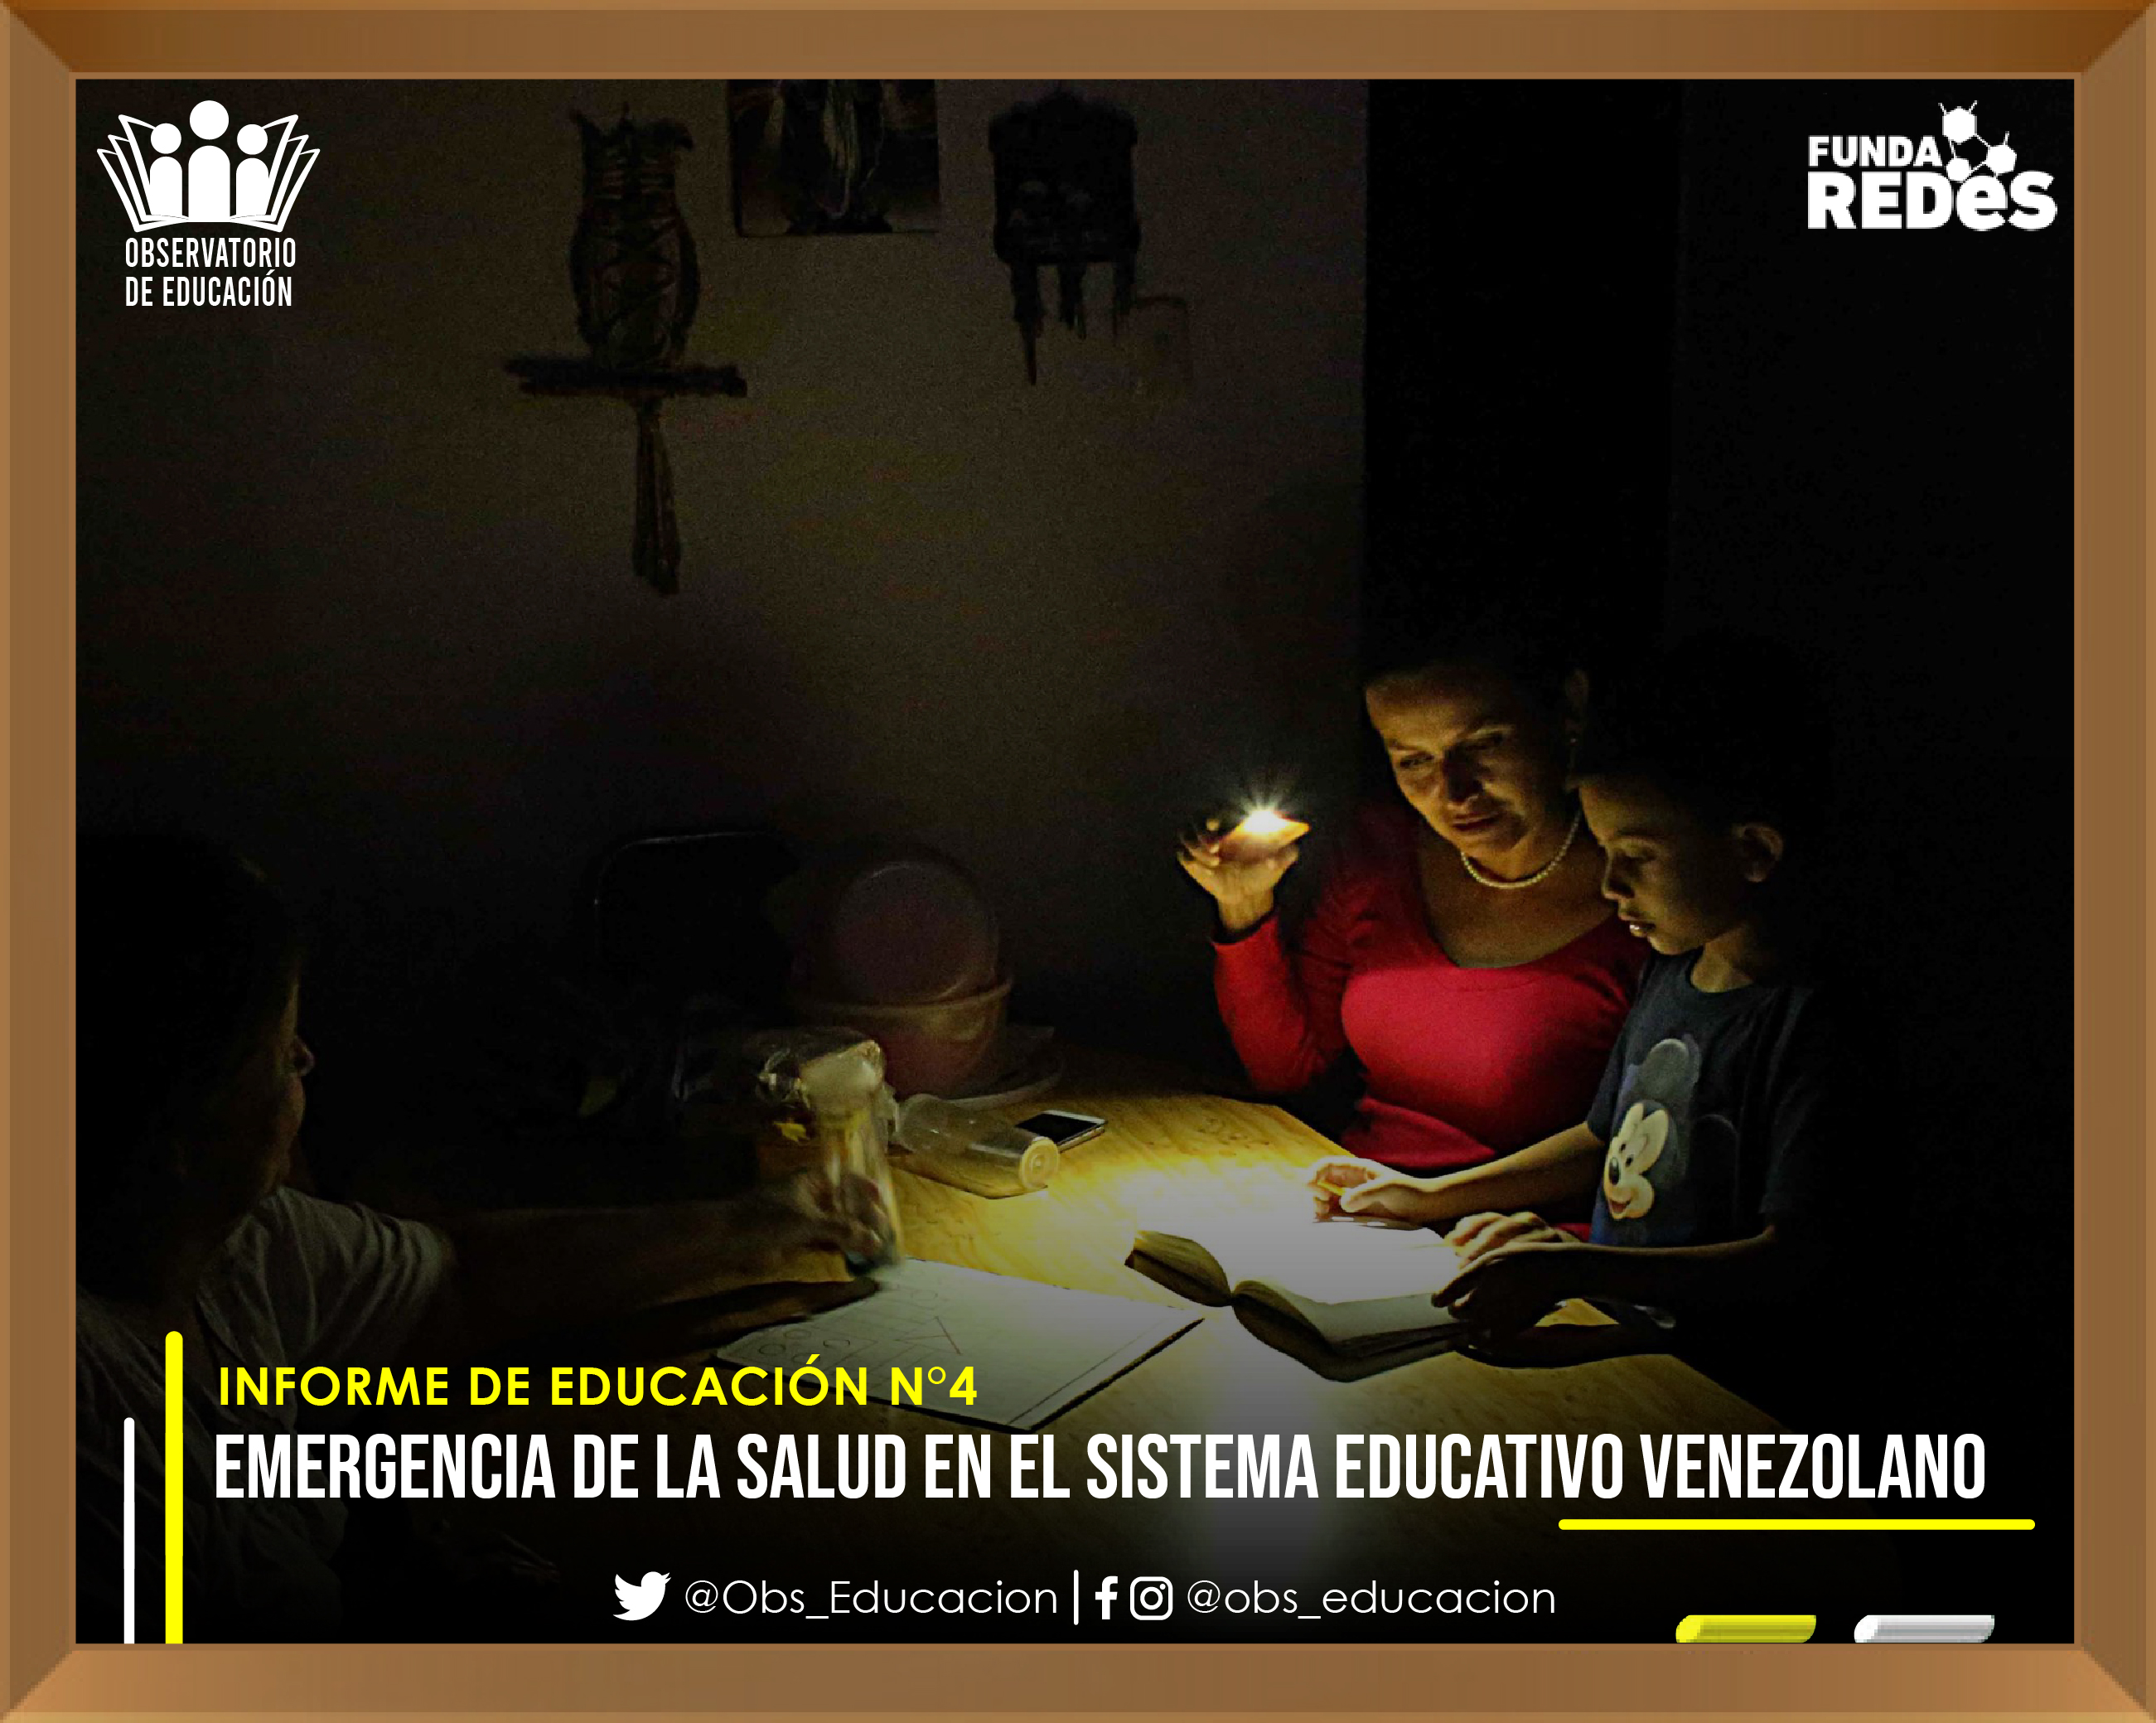 FundaRedes: Incapacidad del Estado venezolano vulnera el derecho a una educación digna